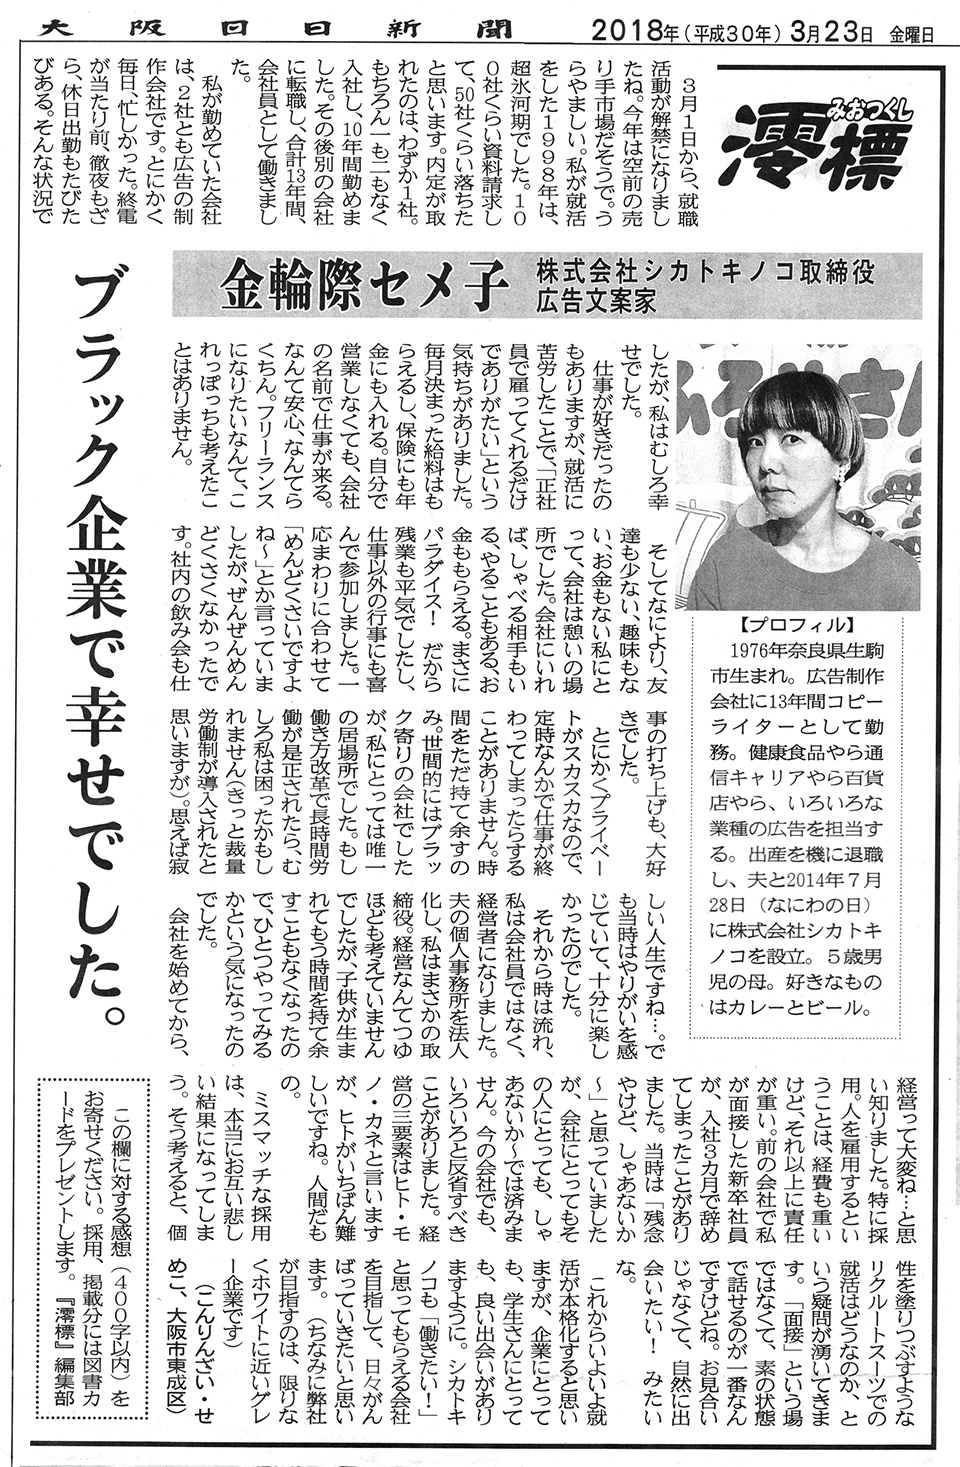 澪標 みおつくし 1 ブラック企業で幸せでした 大阪日日新聞 メディア紹介 株式会社シカトキノコ